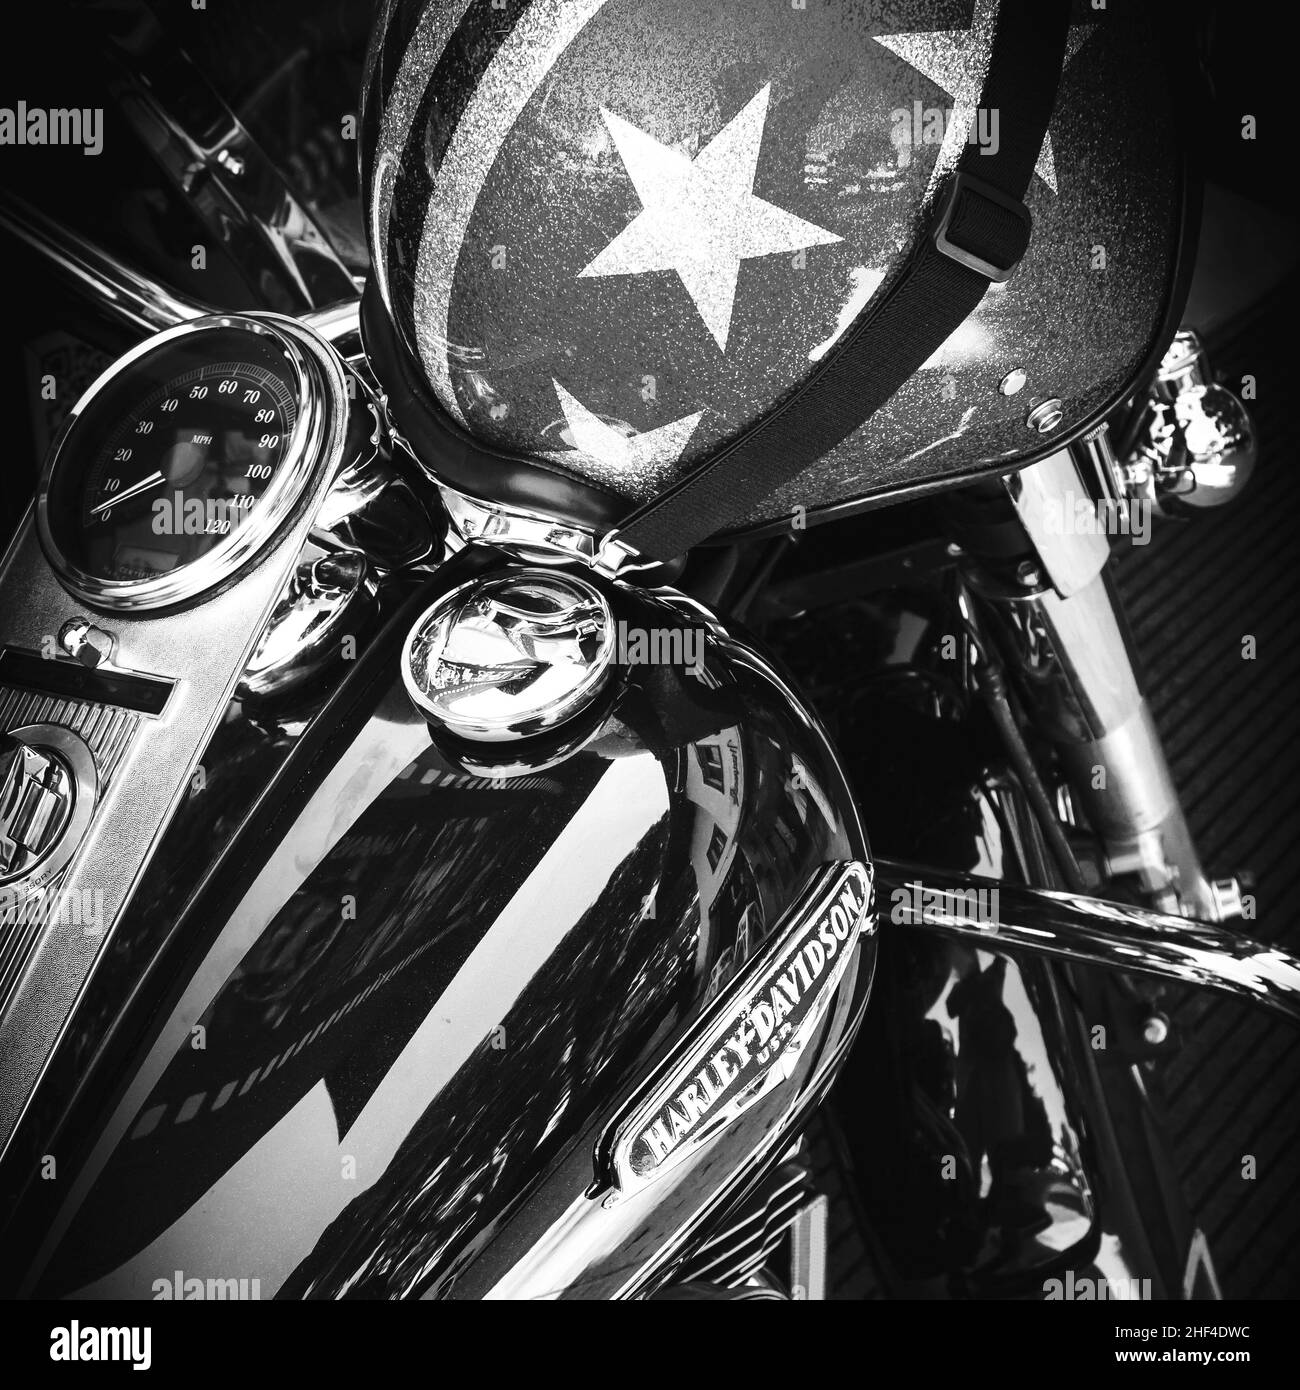 Logo de motocyclettes Harley Davidson sur un réservoir et casque italien. Jesolo (VE), ITALIE - Le 29 juillet 2017. Banque D'Images